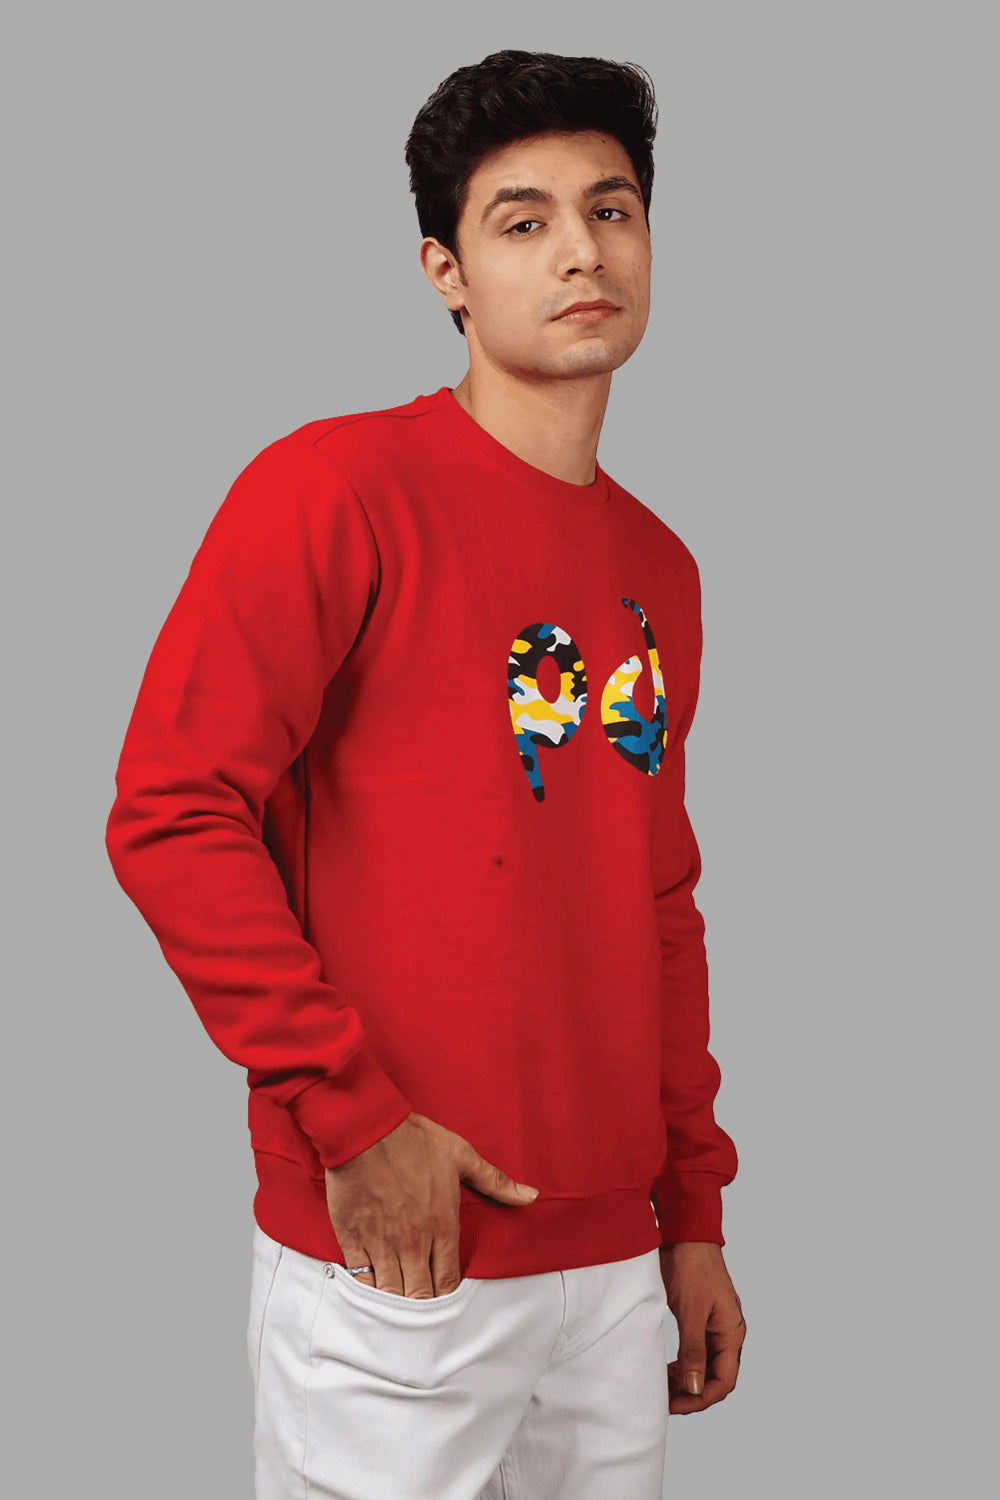 Regular Fit Printed Red Sweatshirt For Men - Peplos Jeans 